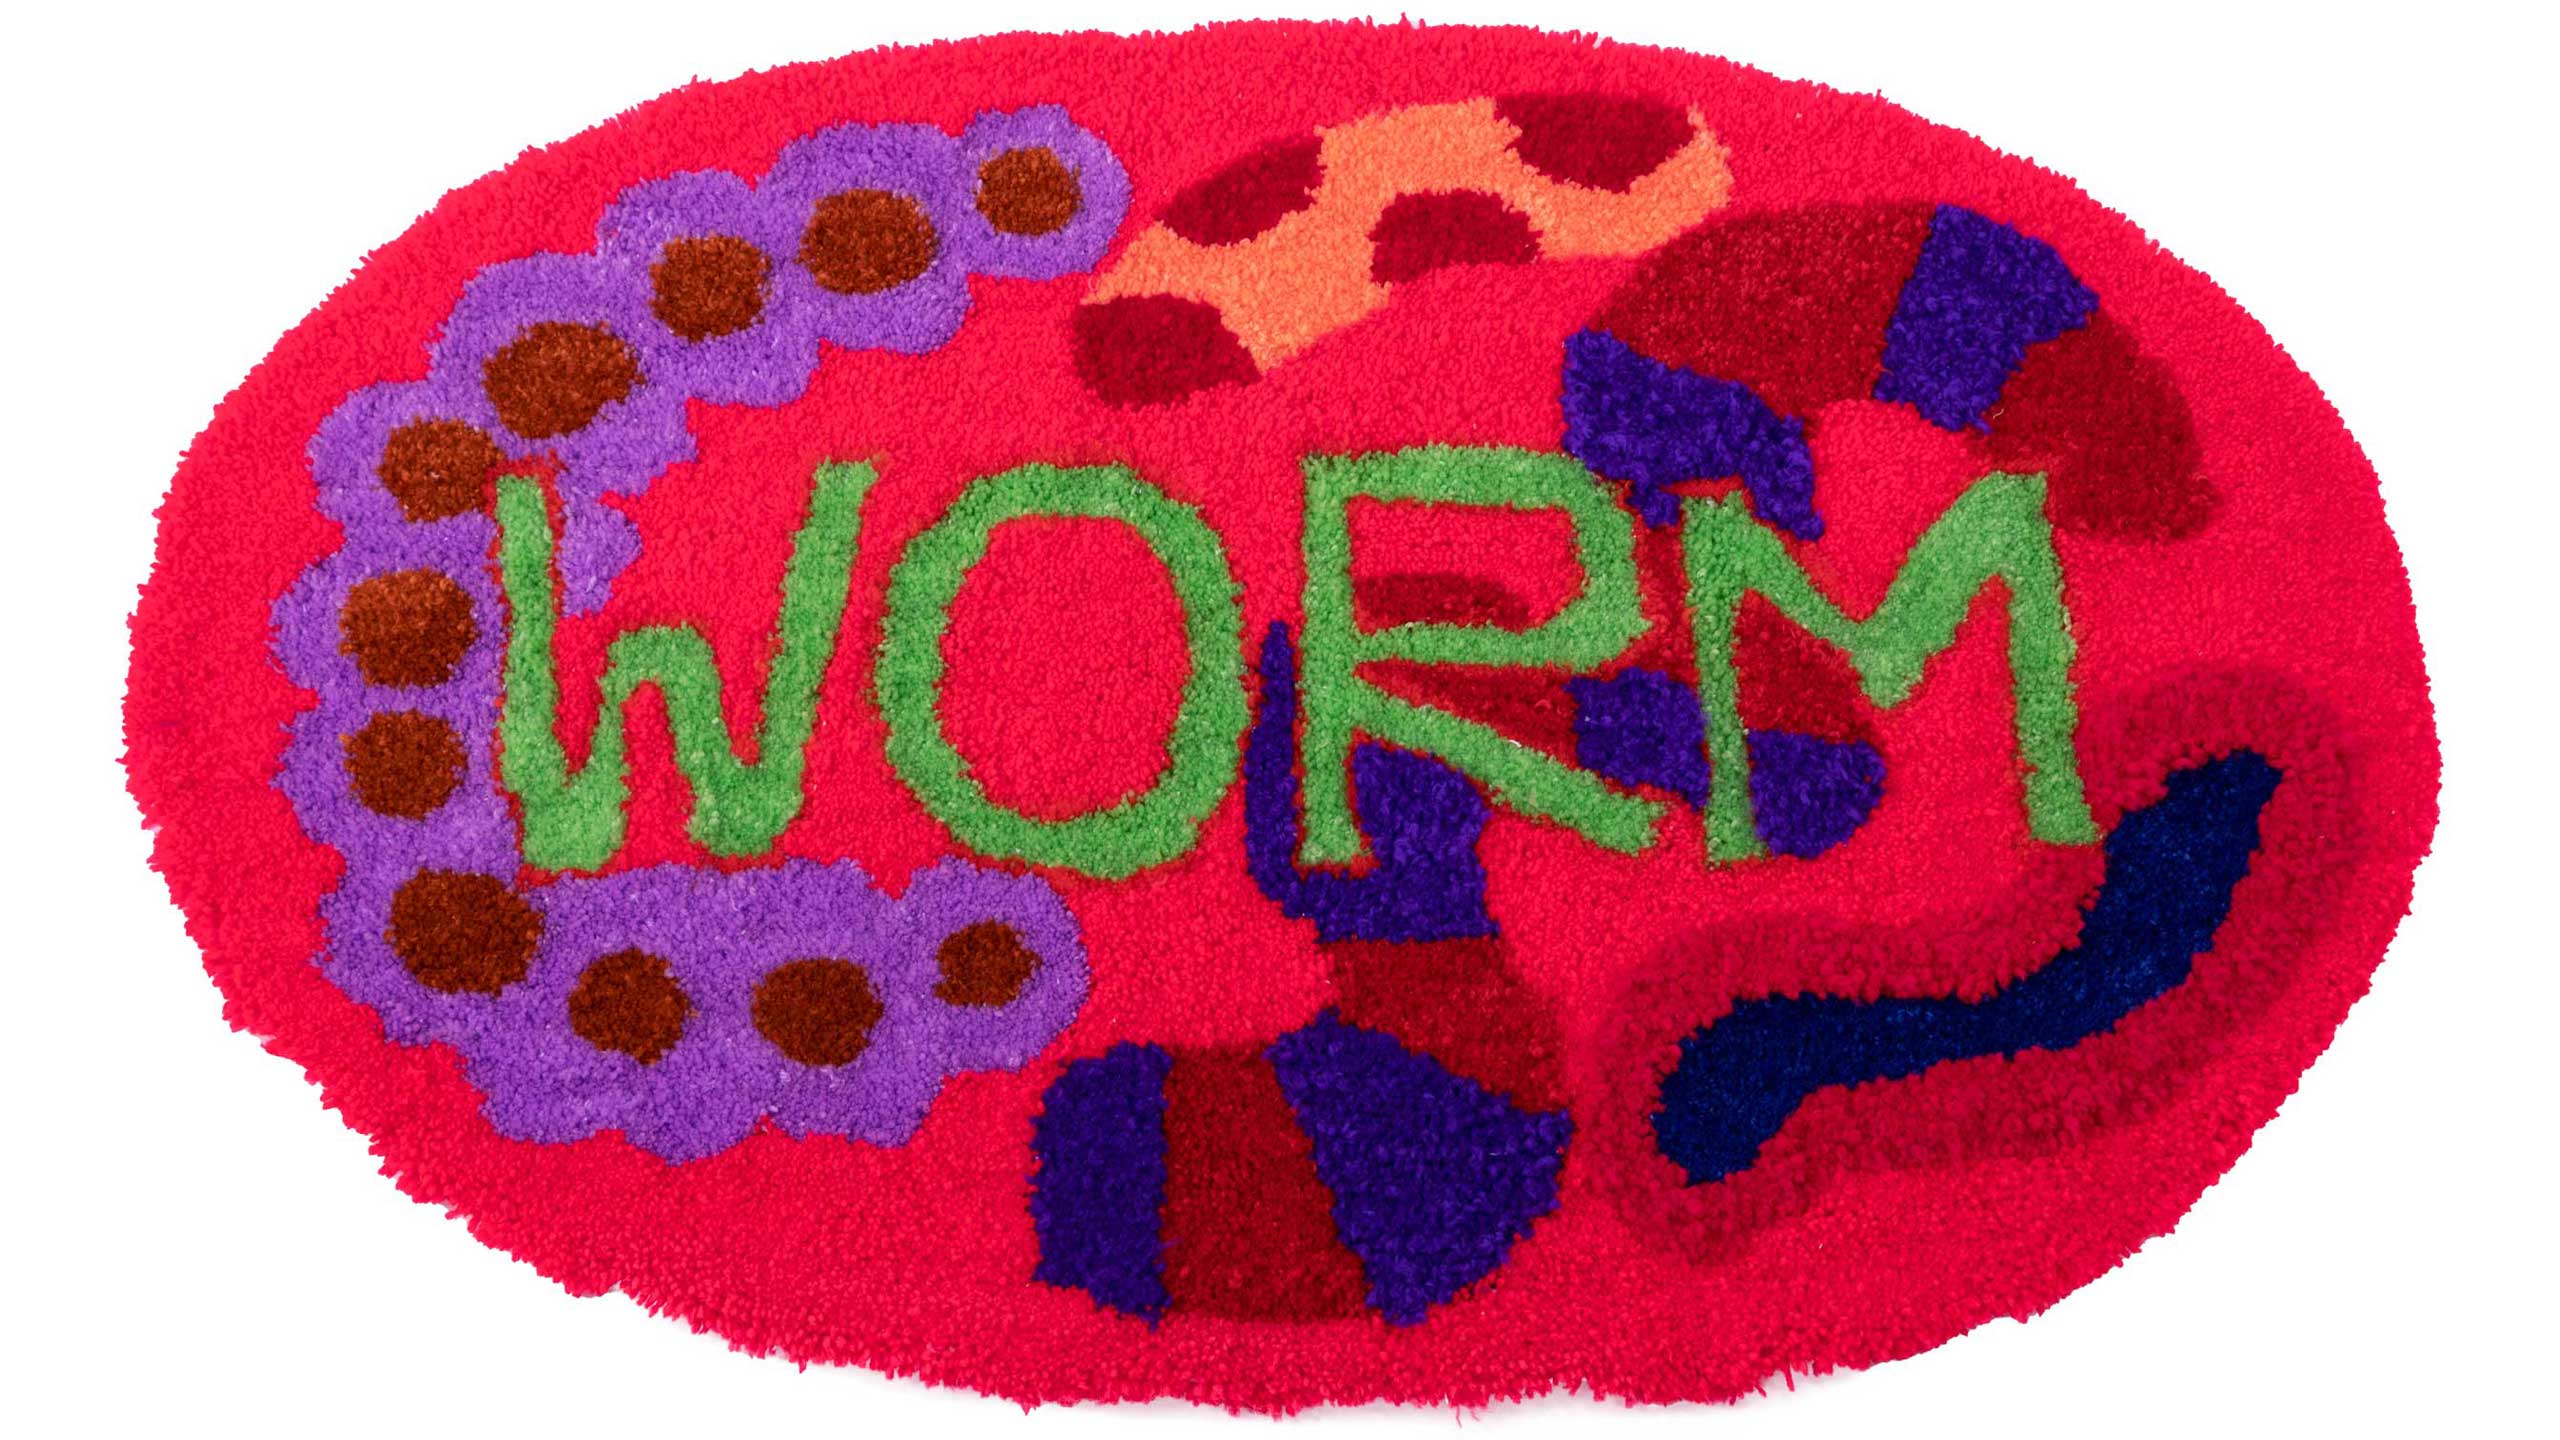 빨간색 카펫 위에 초록색 글씨로 worm이 그려져있다.